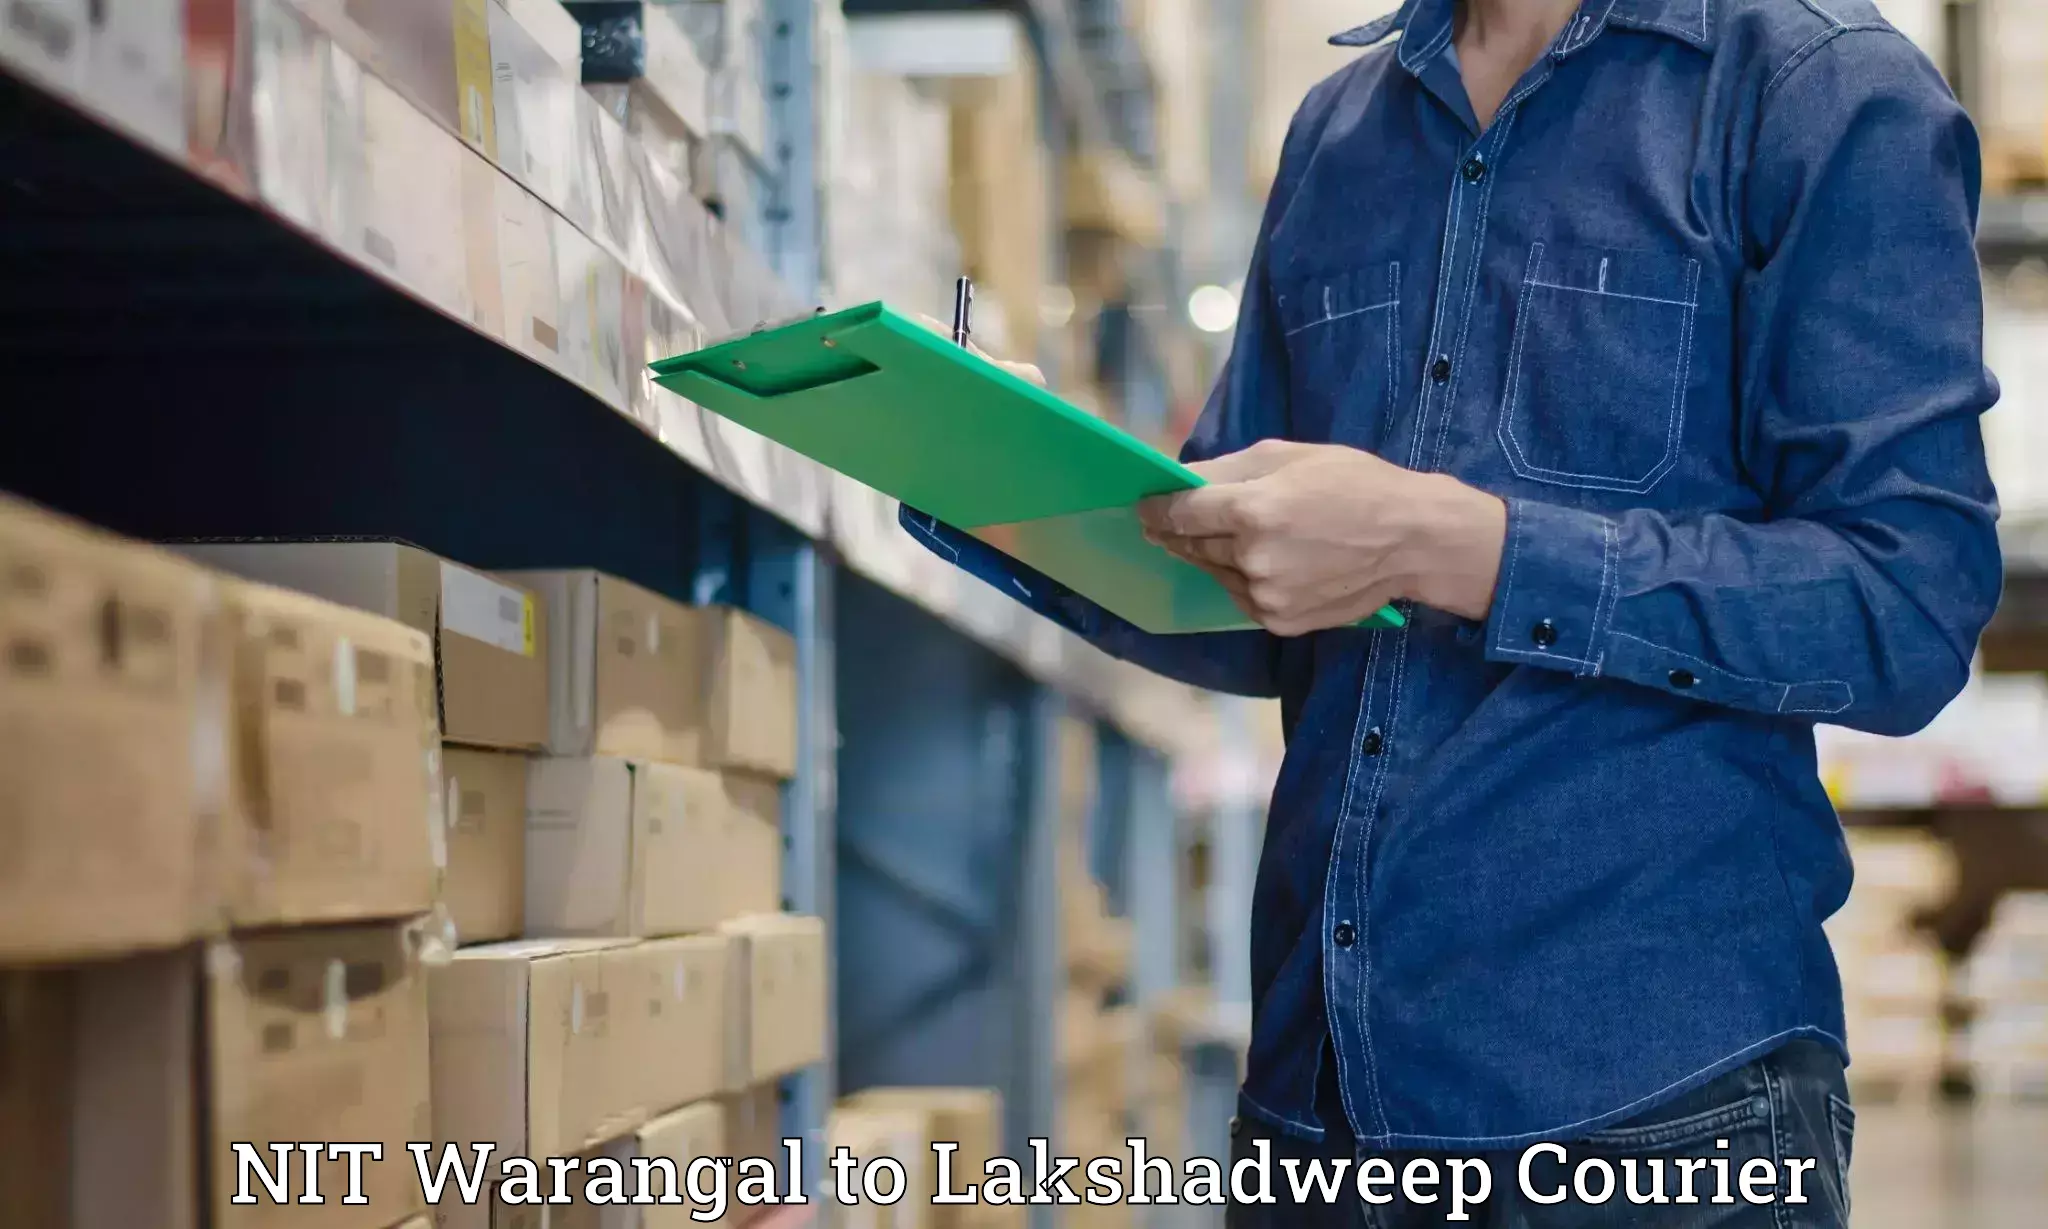 Quick dispatch service NIT Warangal to Lakshadweep